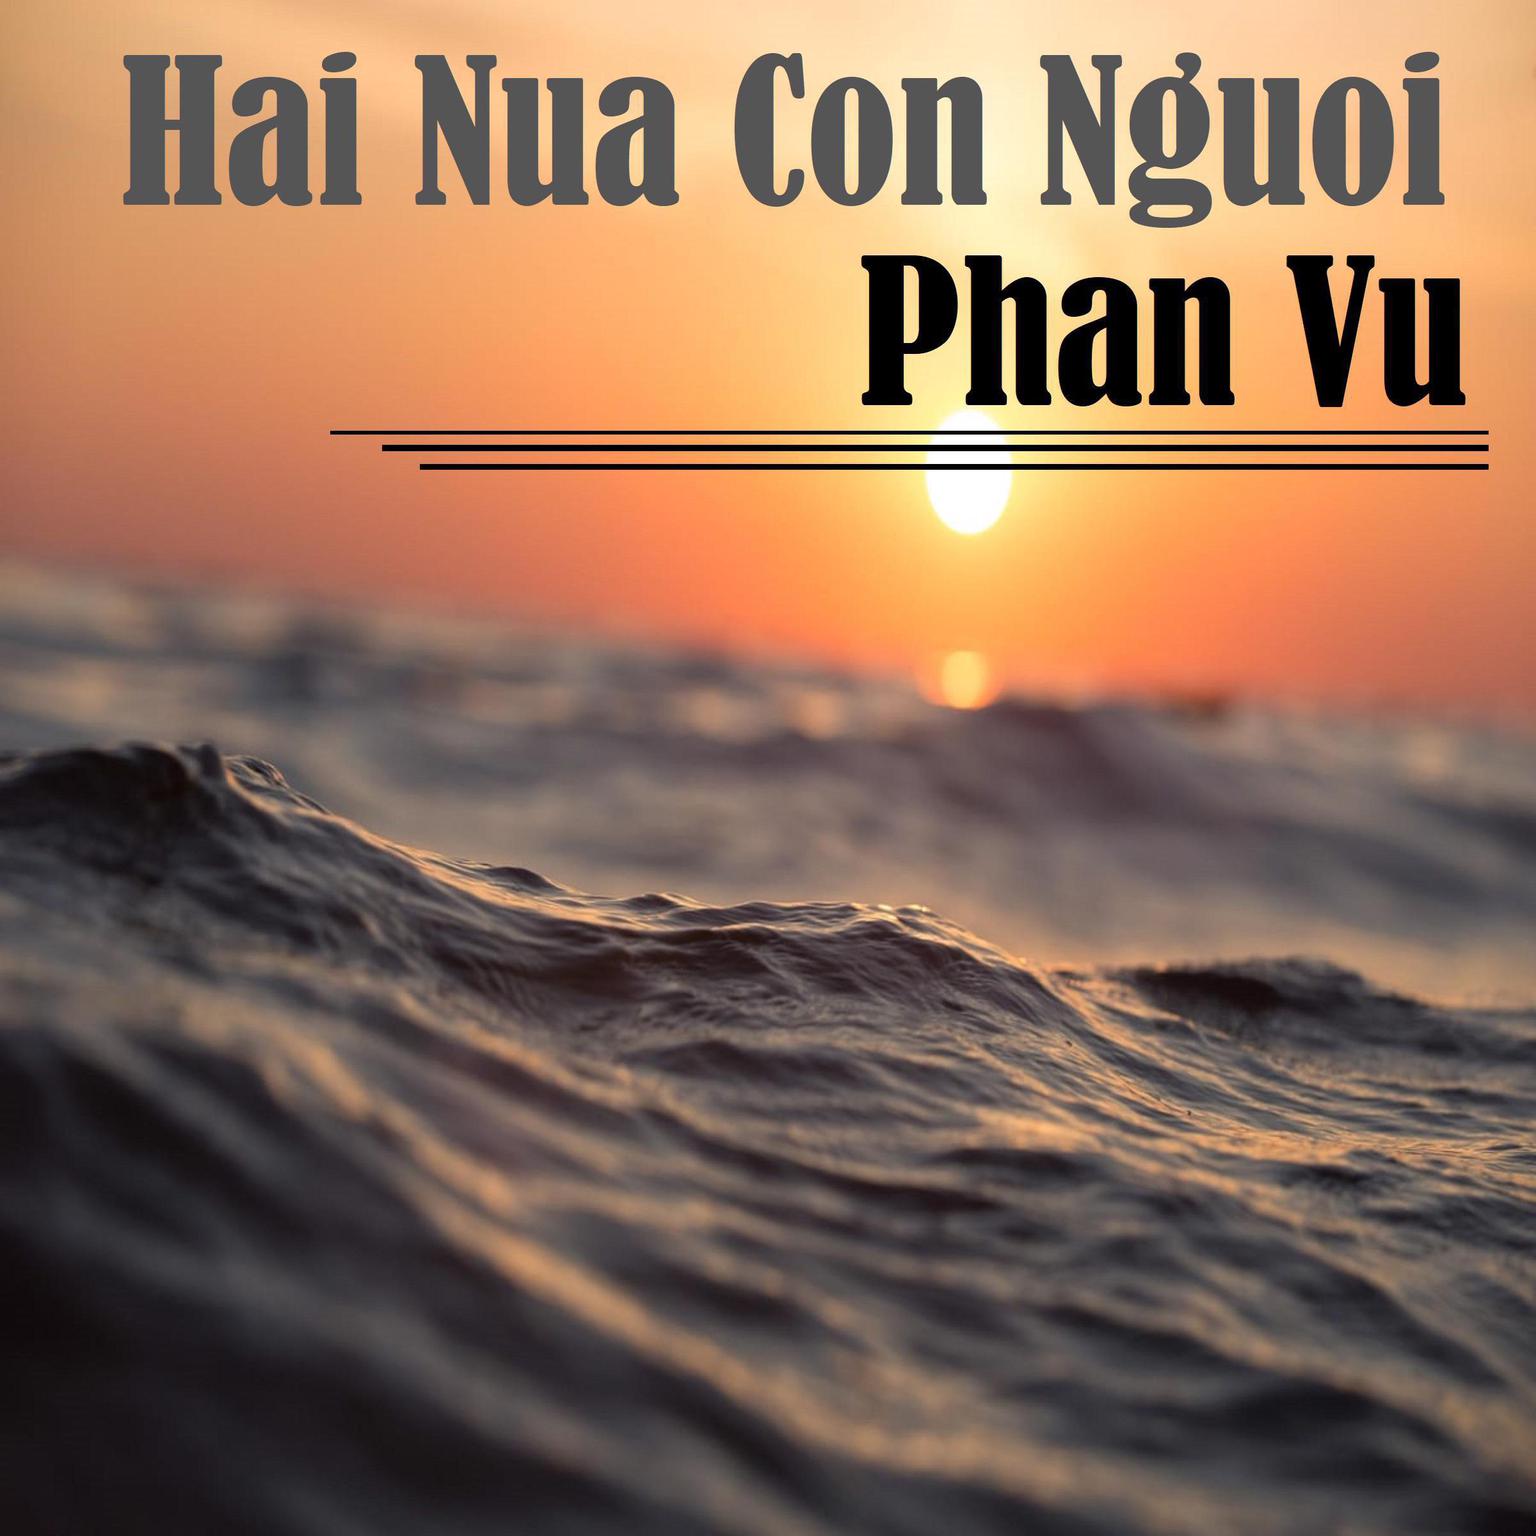 Hai Nua Con Nguoi Audiobook, by Phan Vu